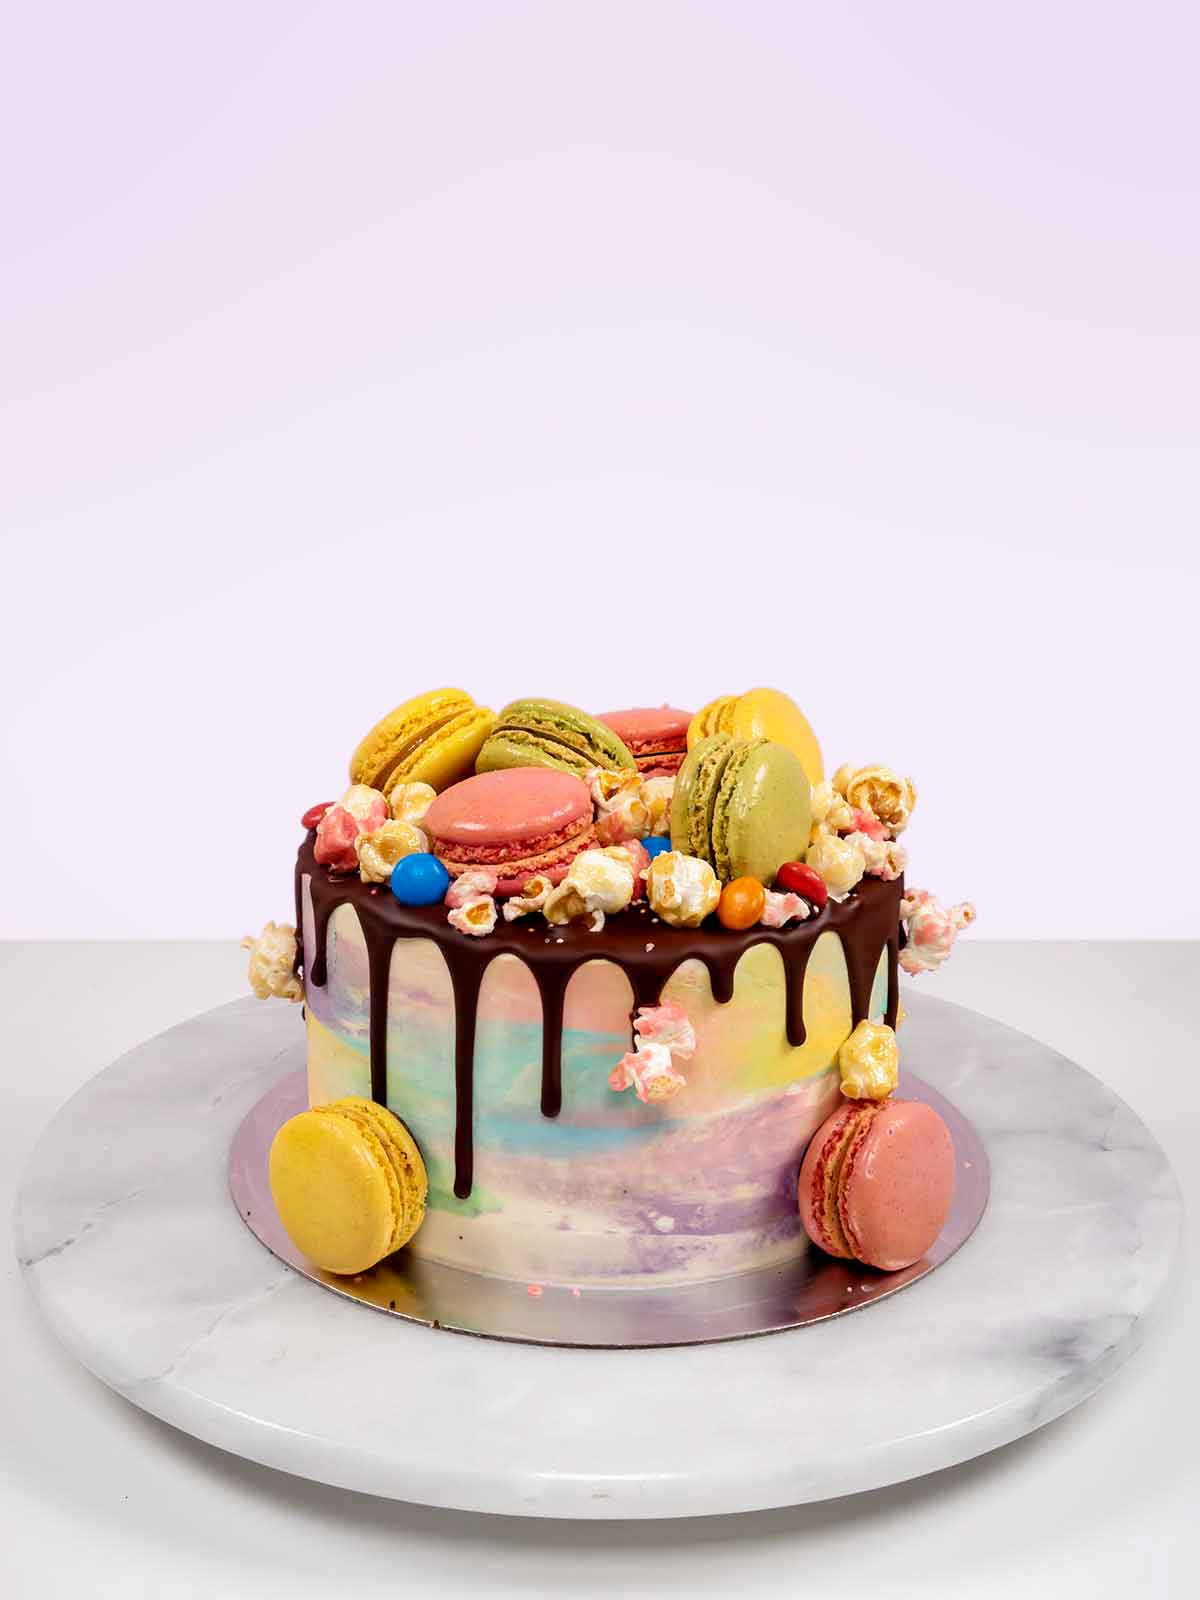 Cách làm chocolate cake decorated with macarons tuyệt đẹp và ngon miệng